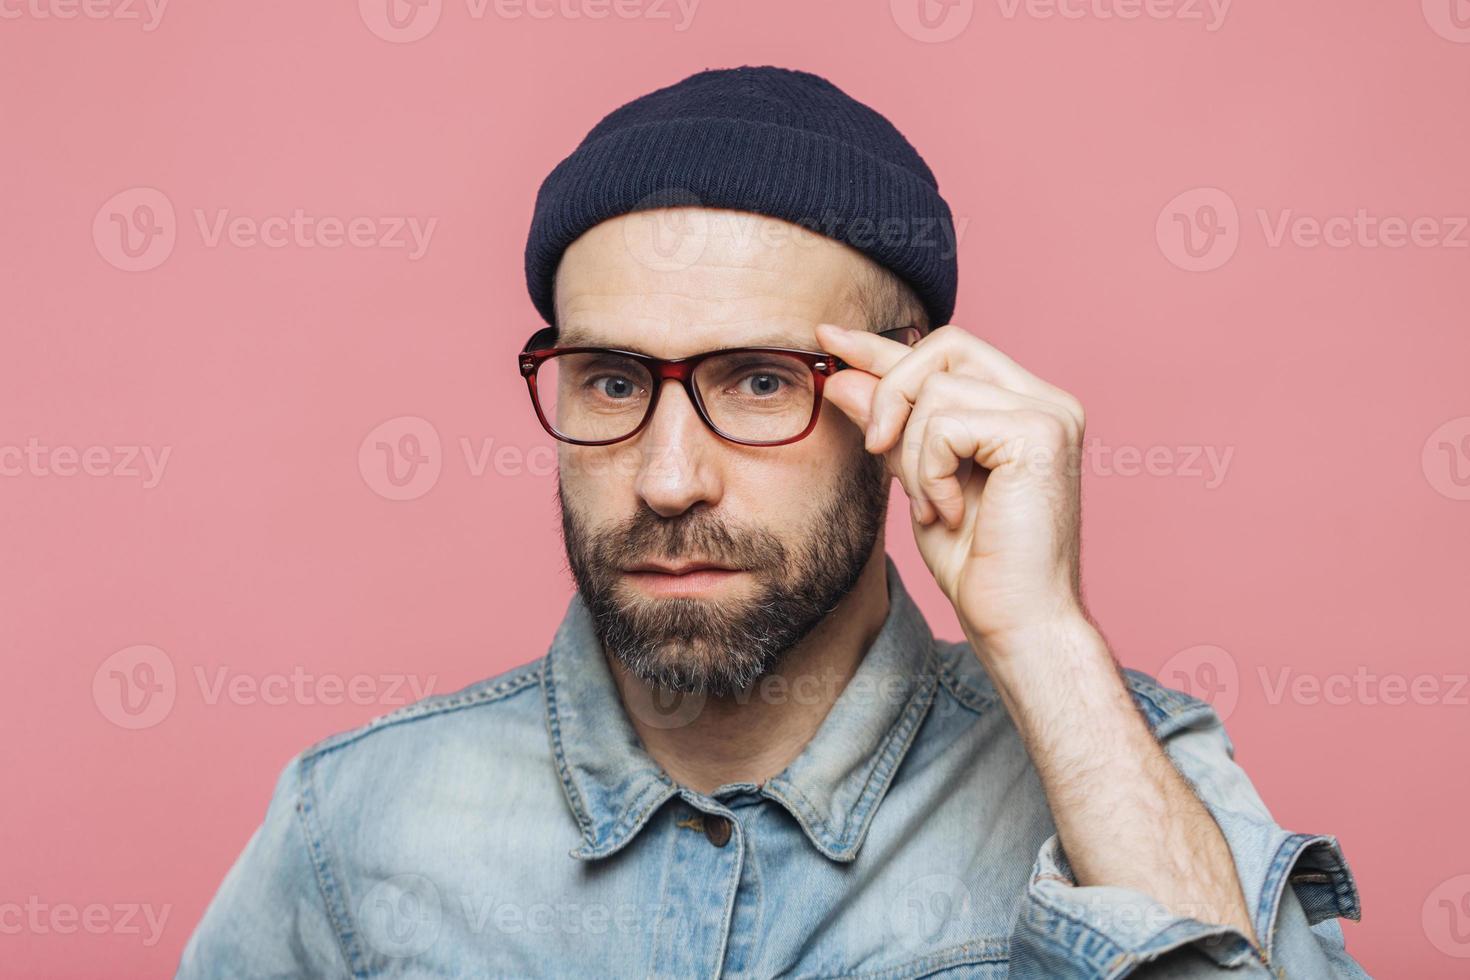 homem barbudo bonito com expressão séria usa óculos e óculos, vestido com camisa jeans elegante, isolado sobre fundo rosa. pessoas, expressões faciais e conceito de emoções. foto